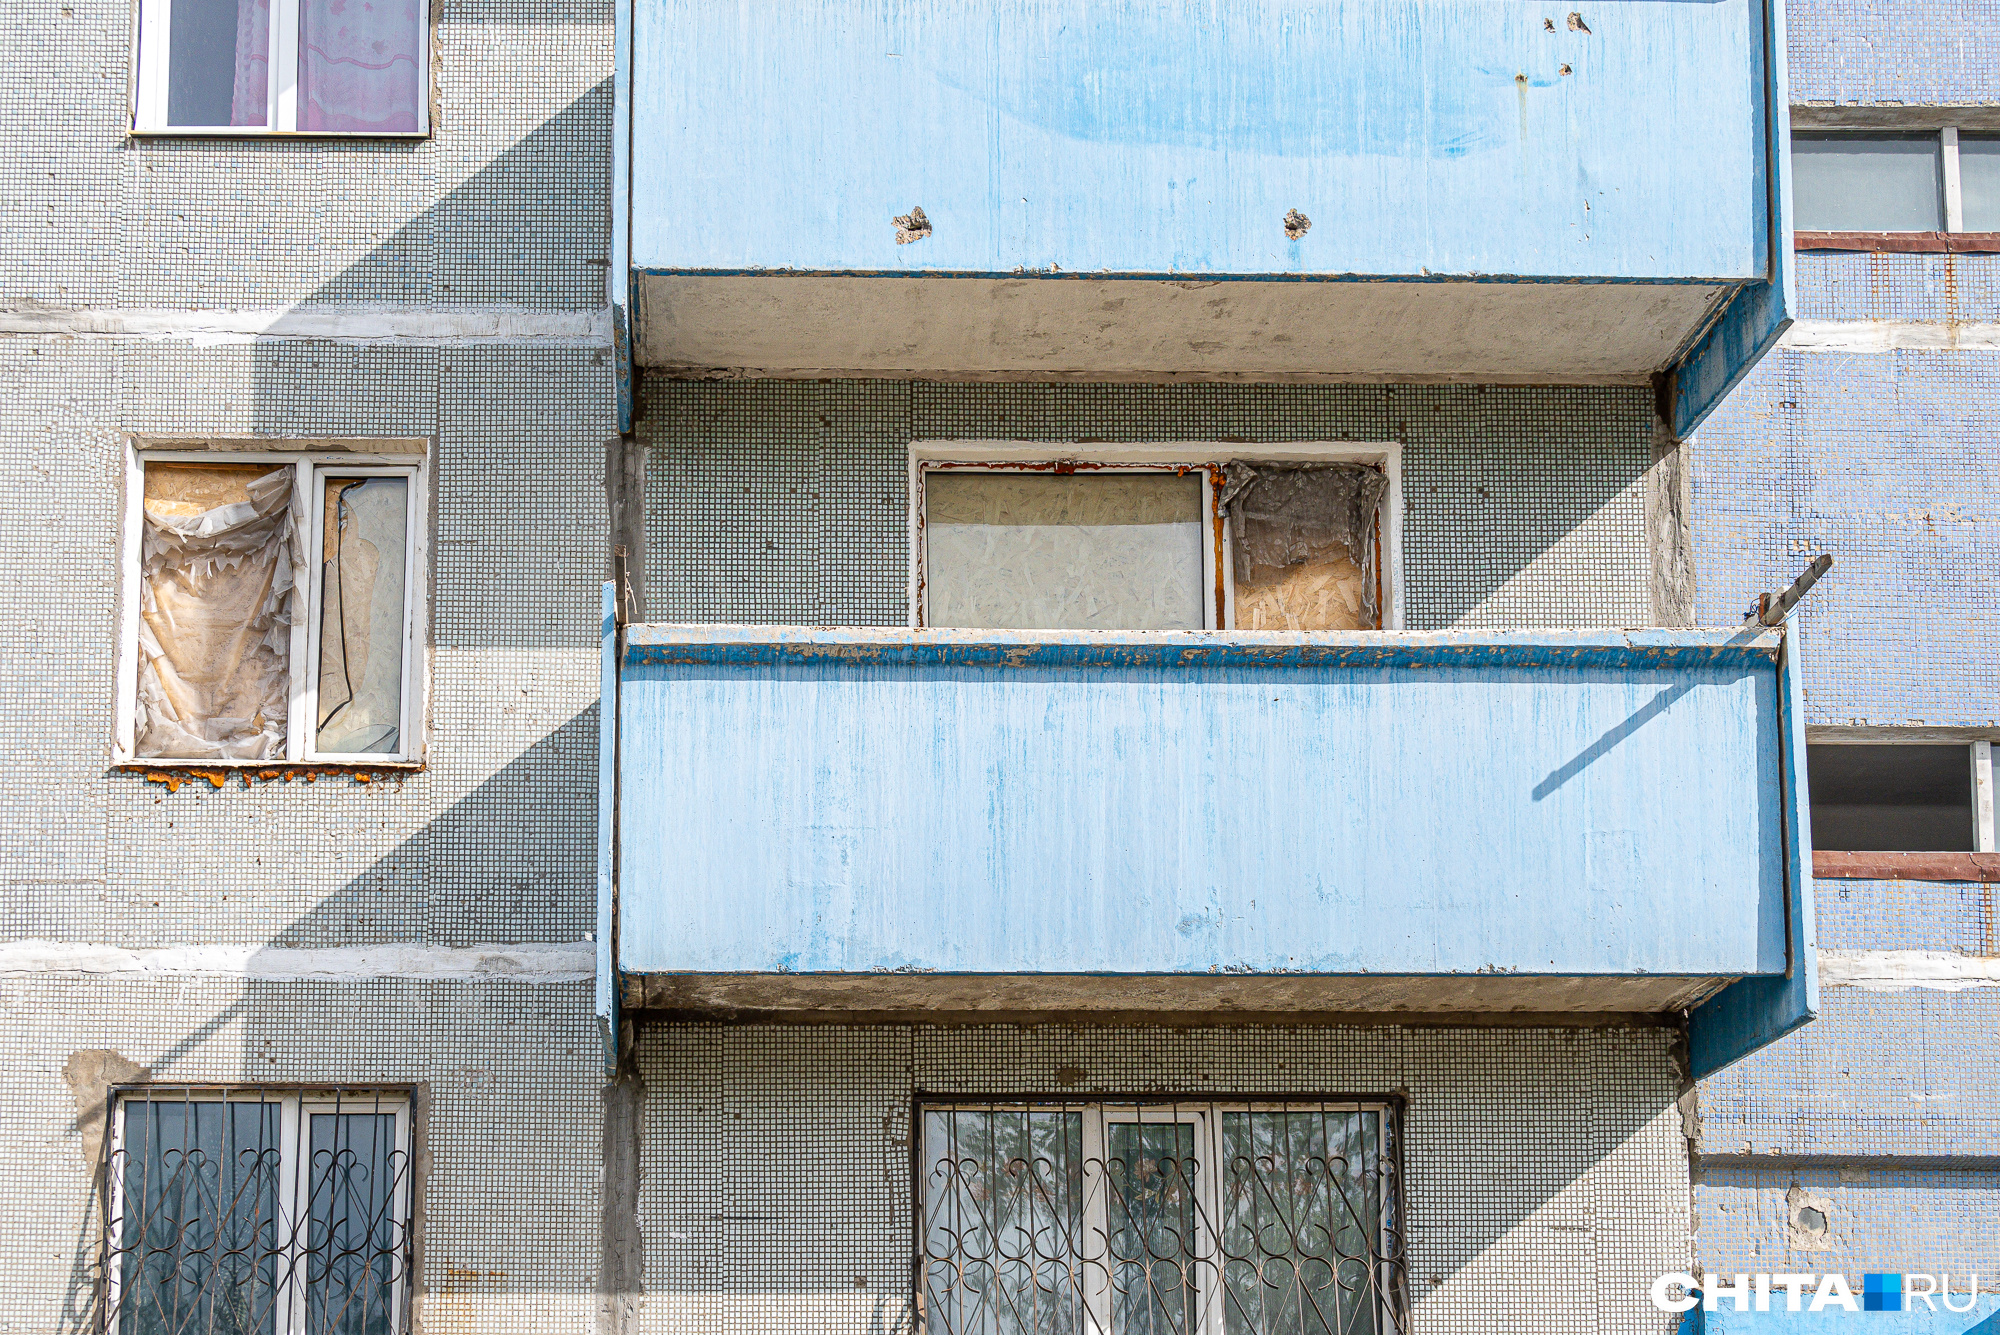 Трубу прорвало в пустой квартире в забайкальском городе Борзя